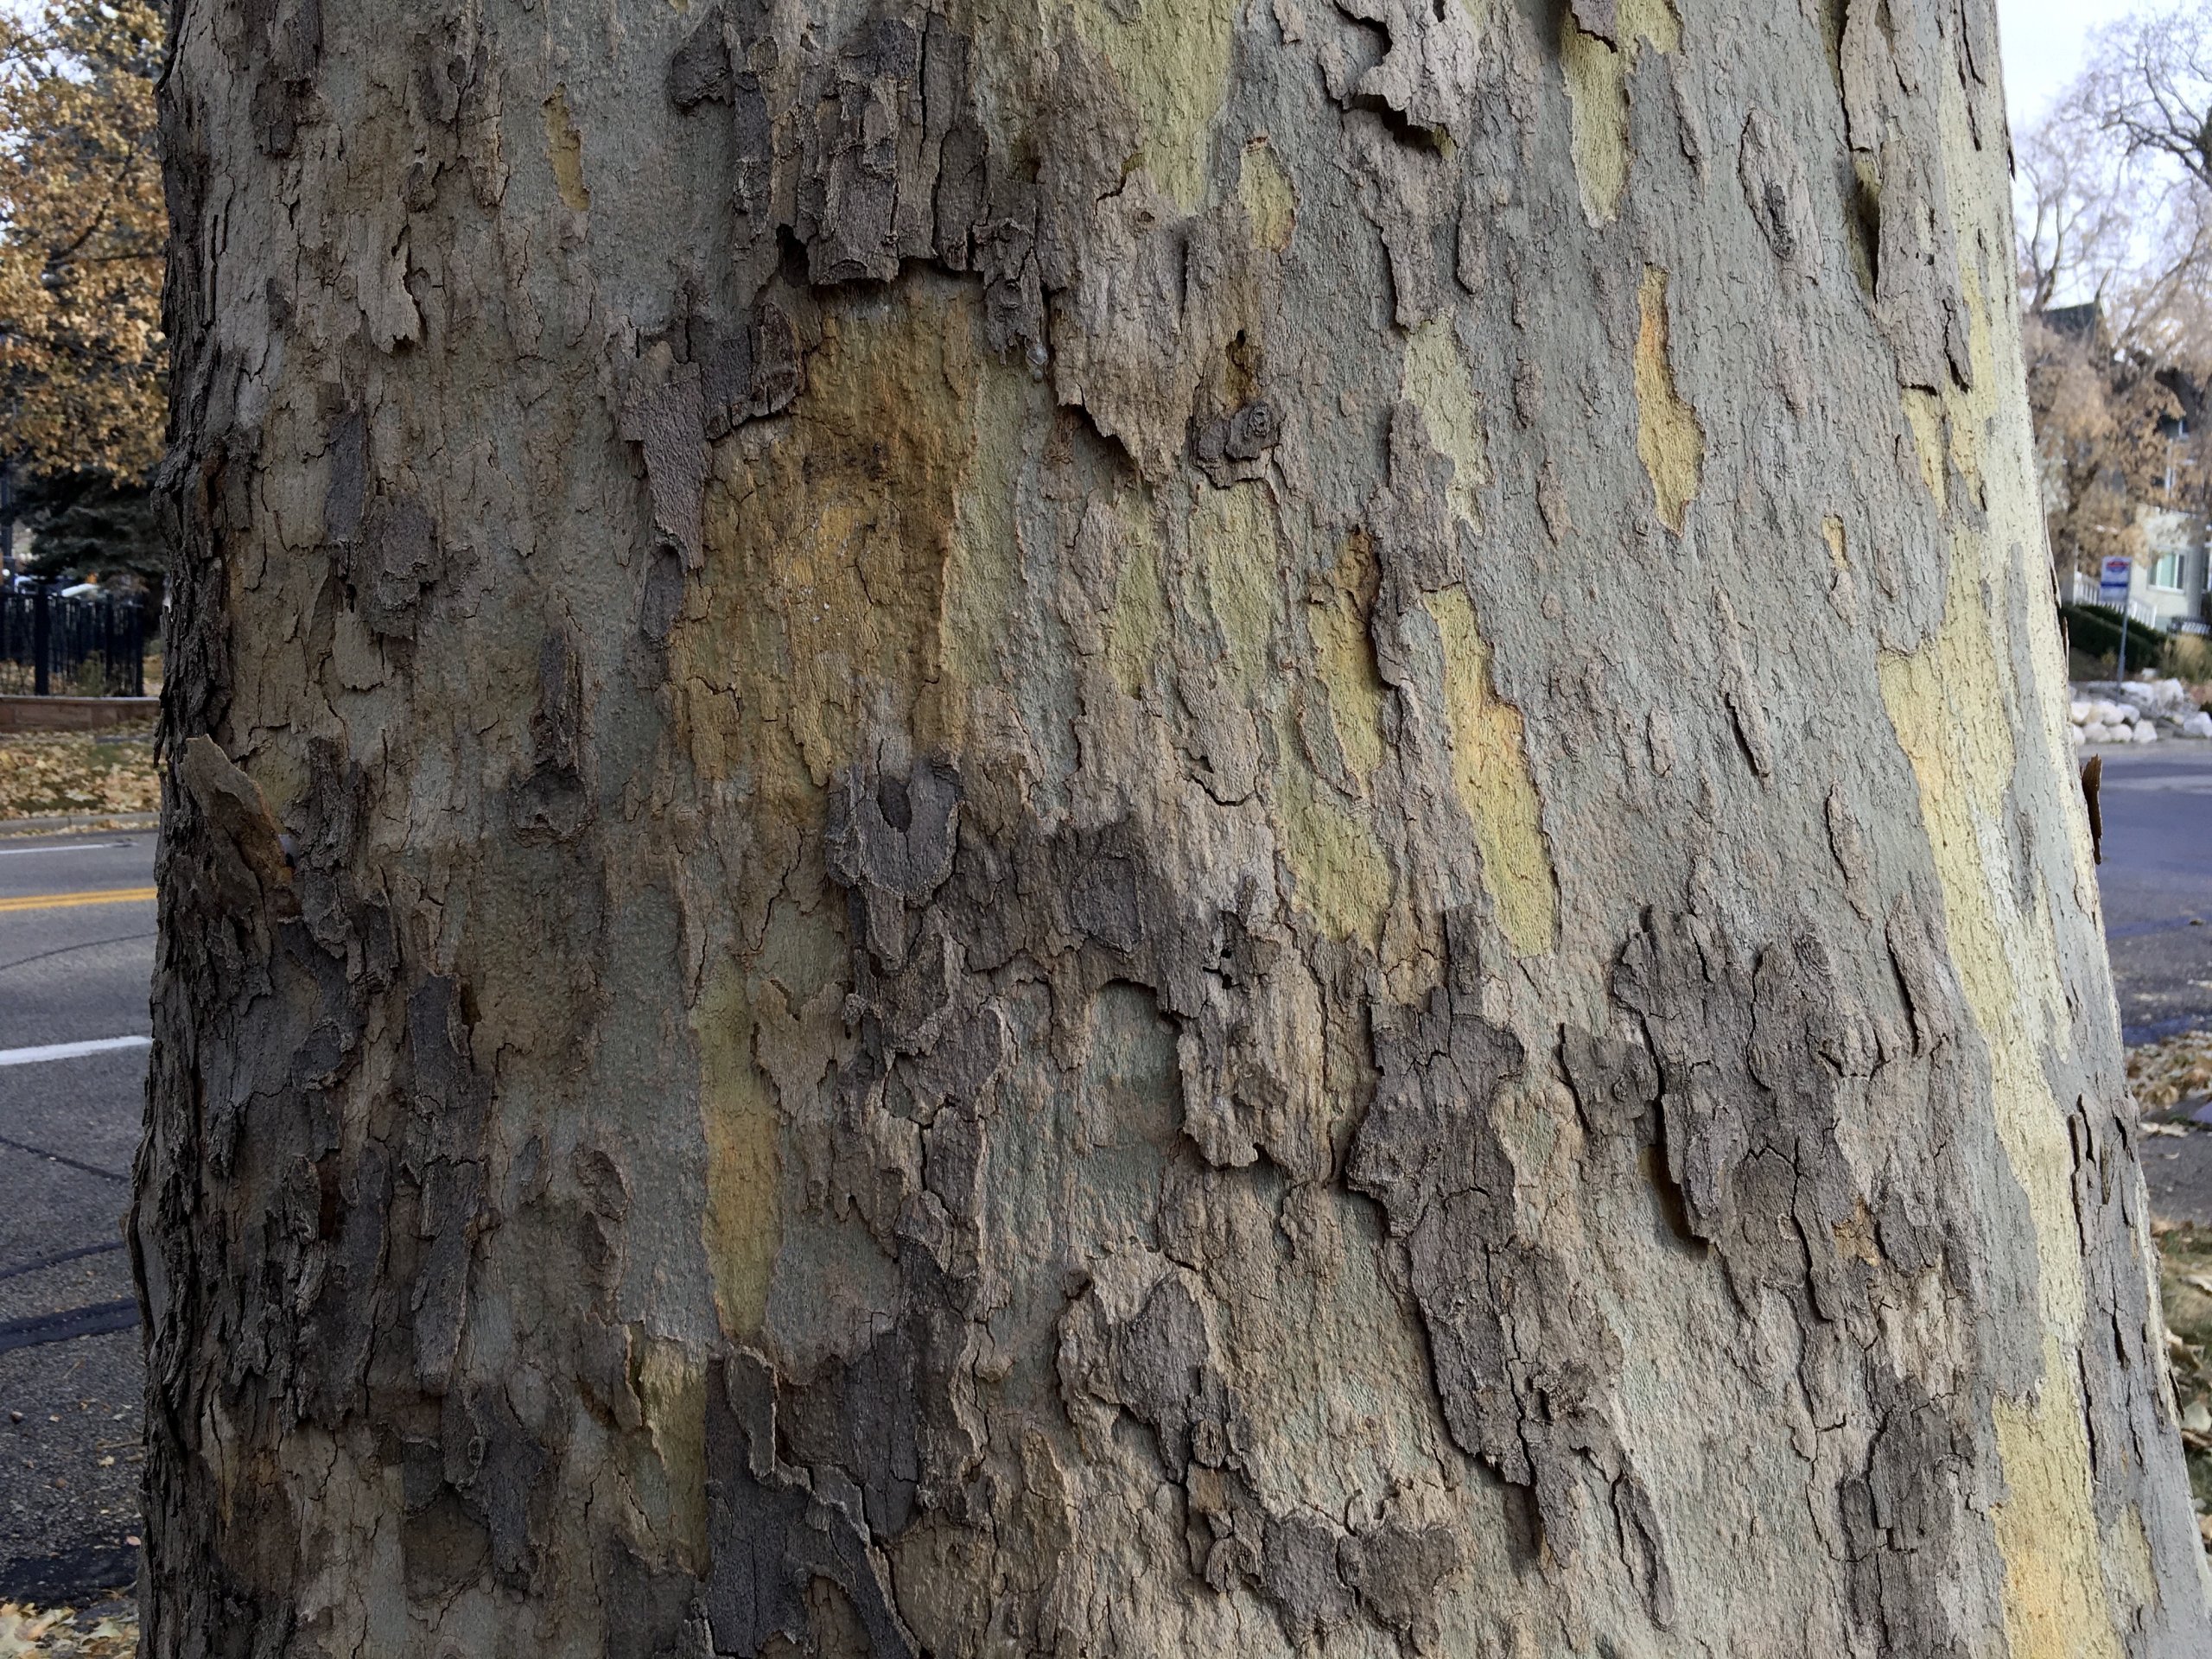 Sycamore Tree Barks